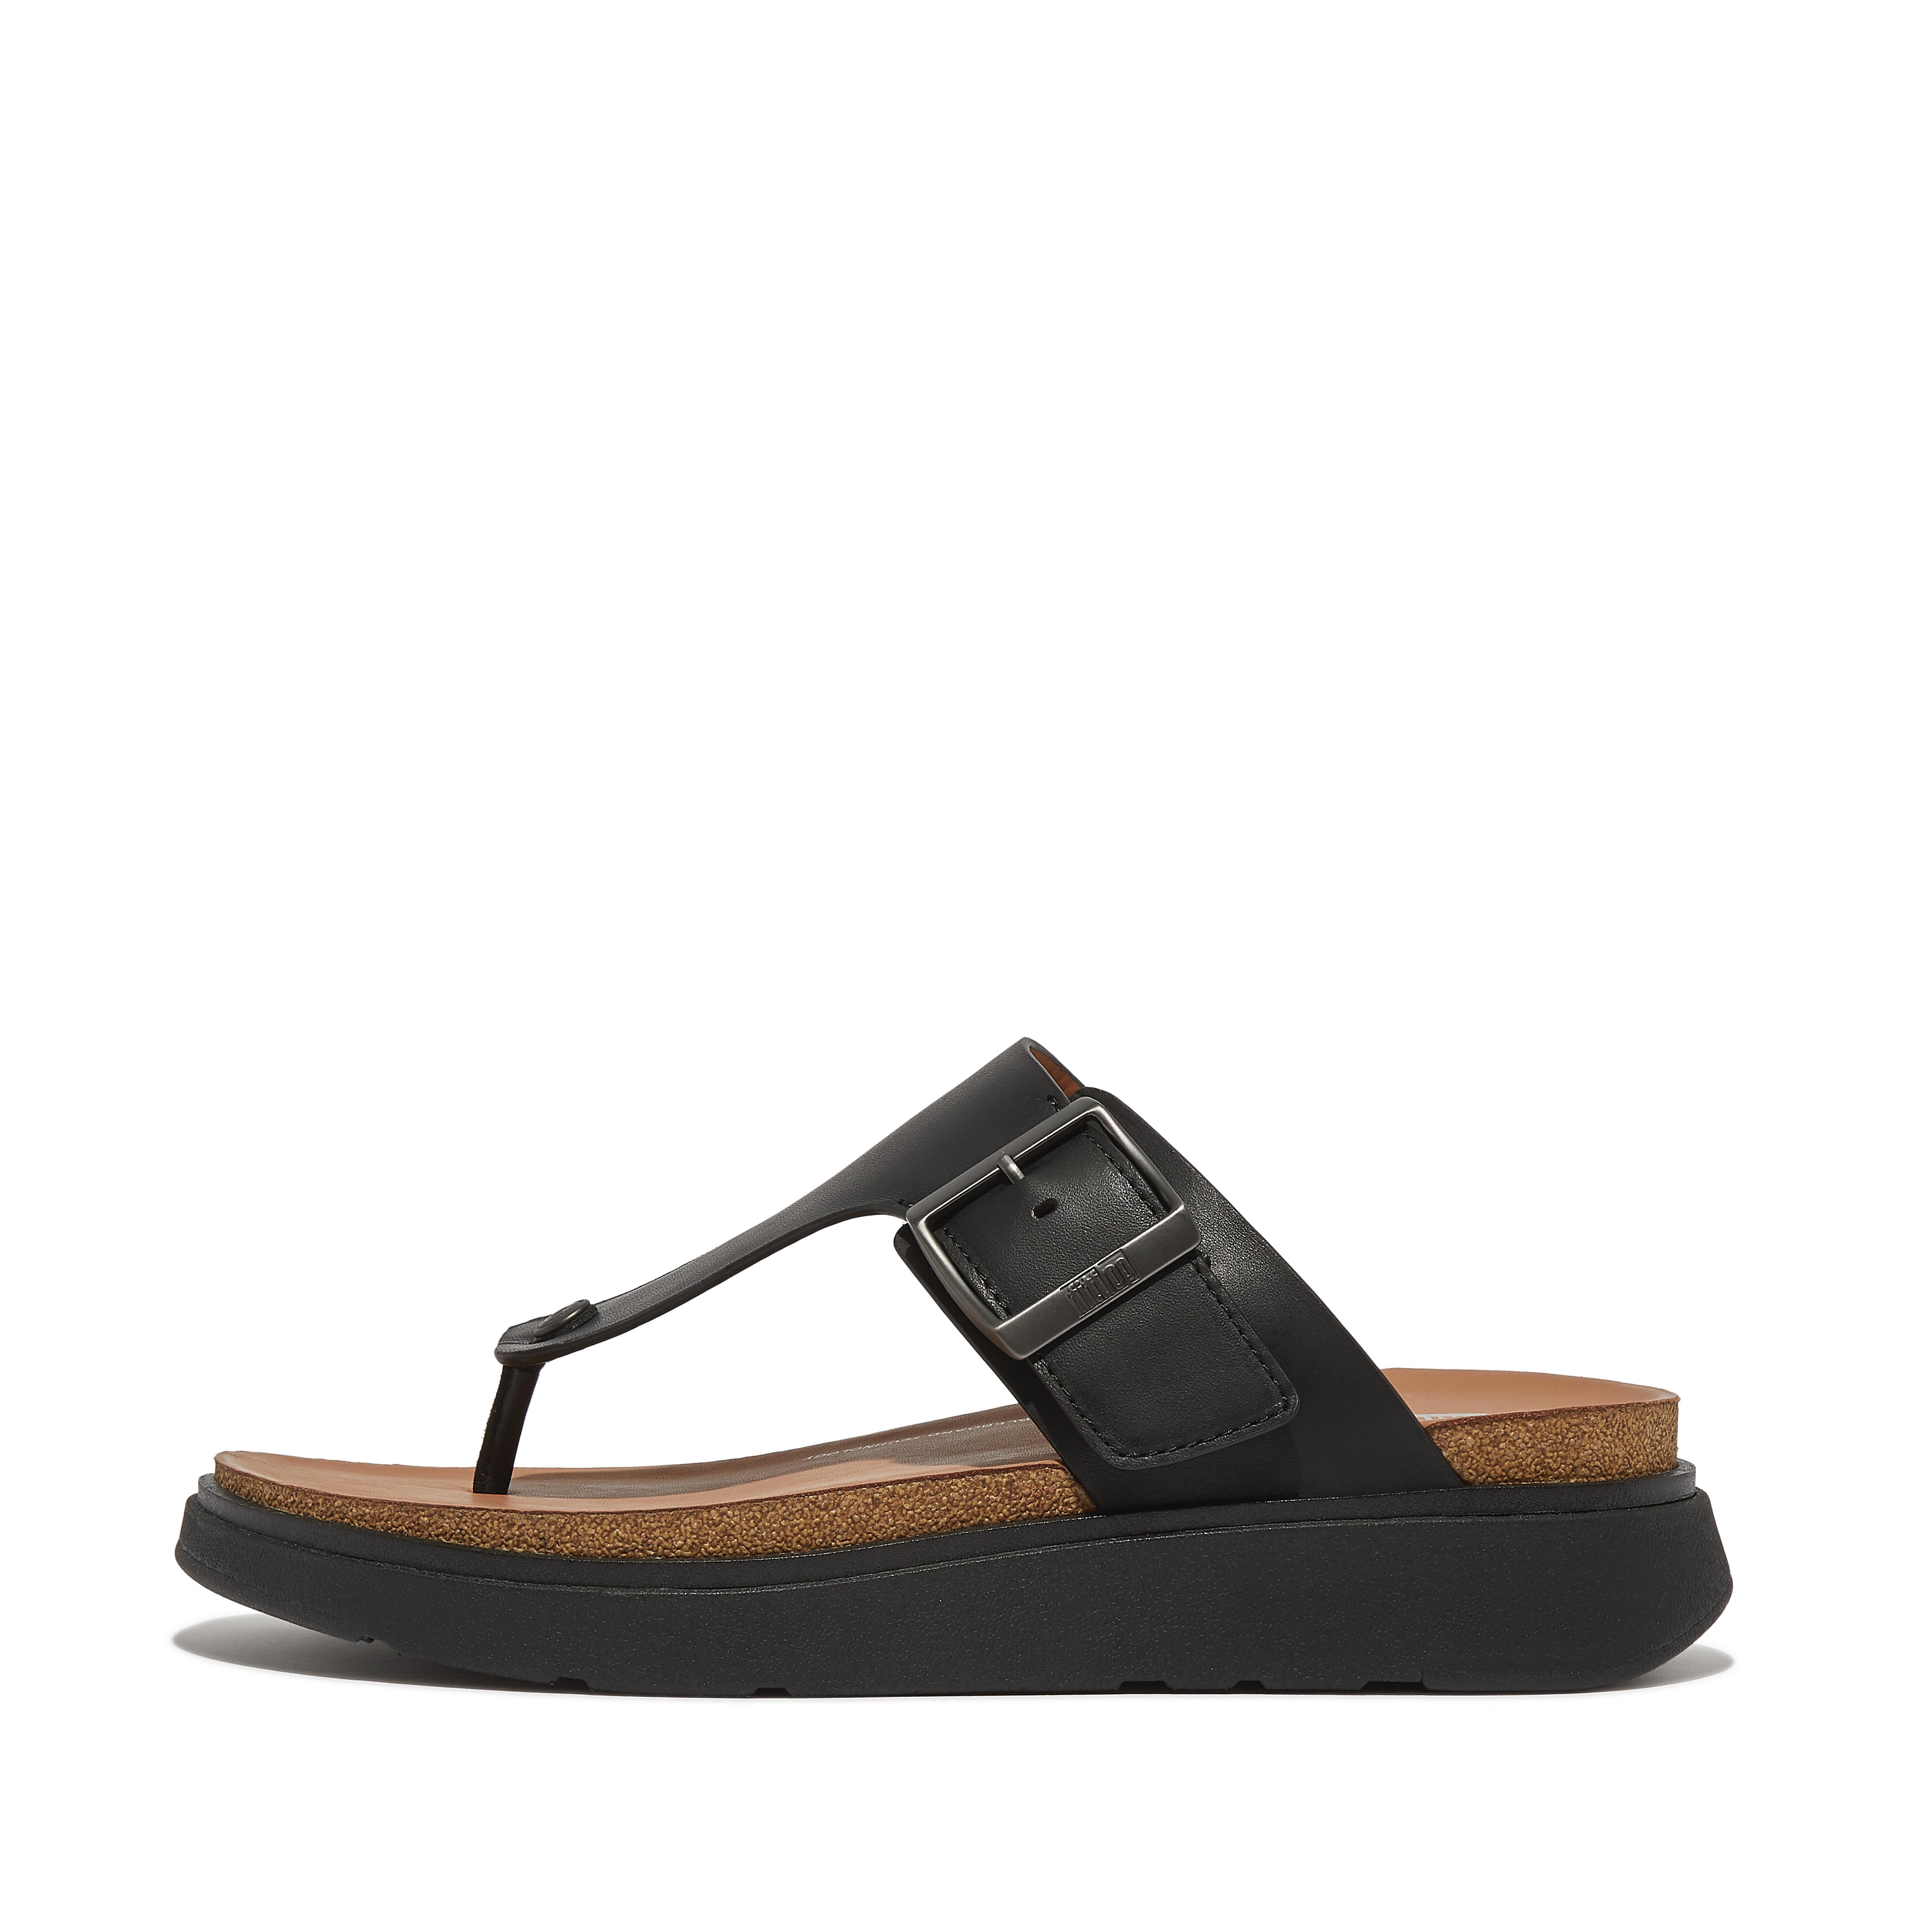 핏플랍 Fitflop Buckle Leather Toe-Post Sandals,Black